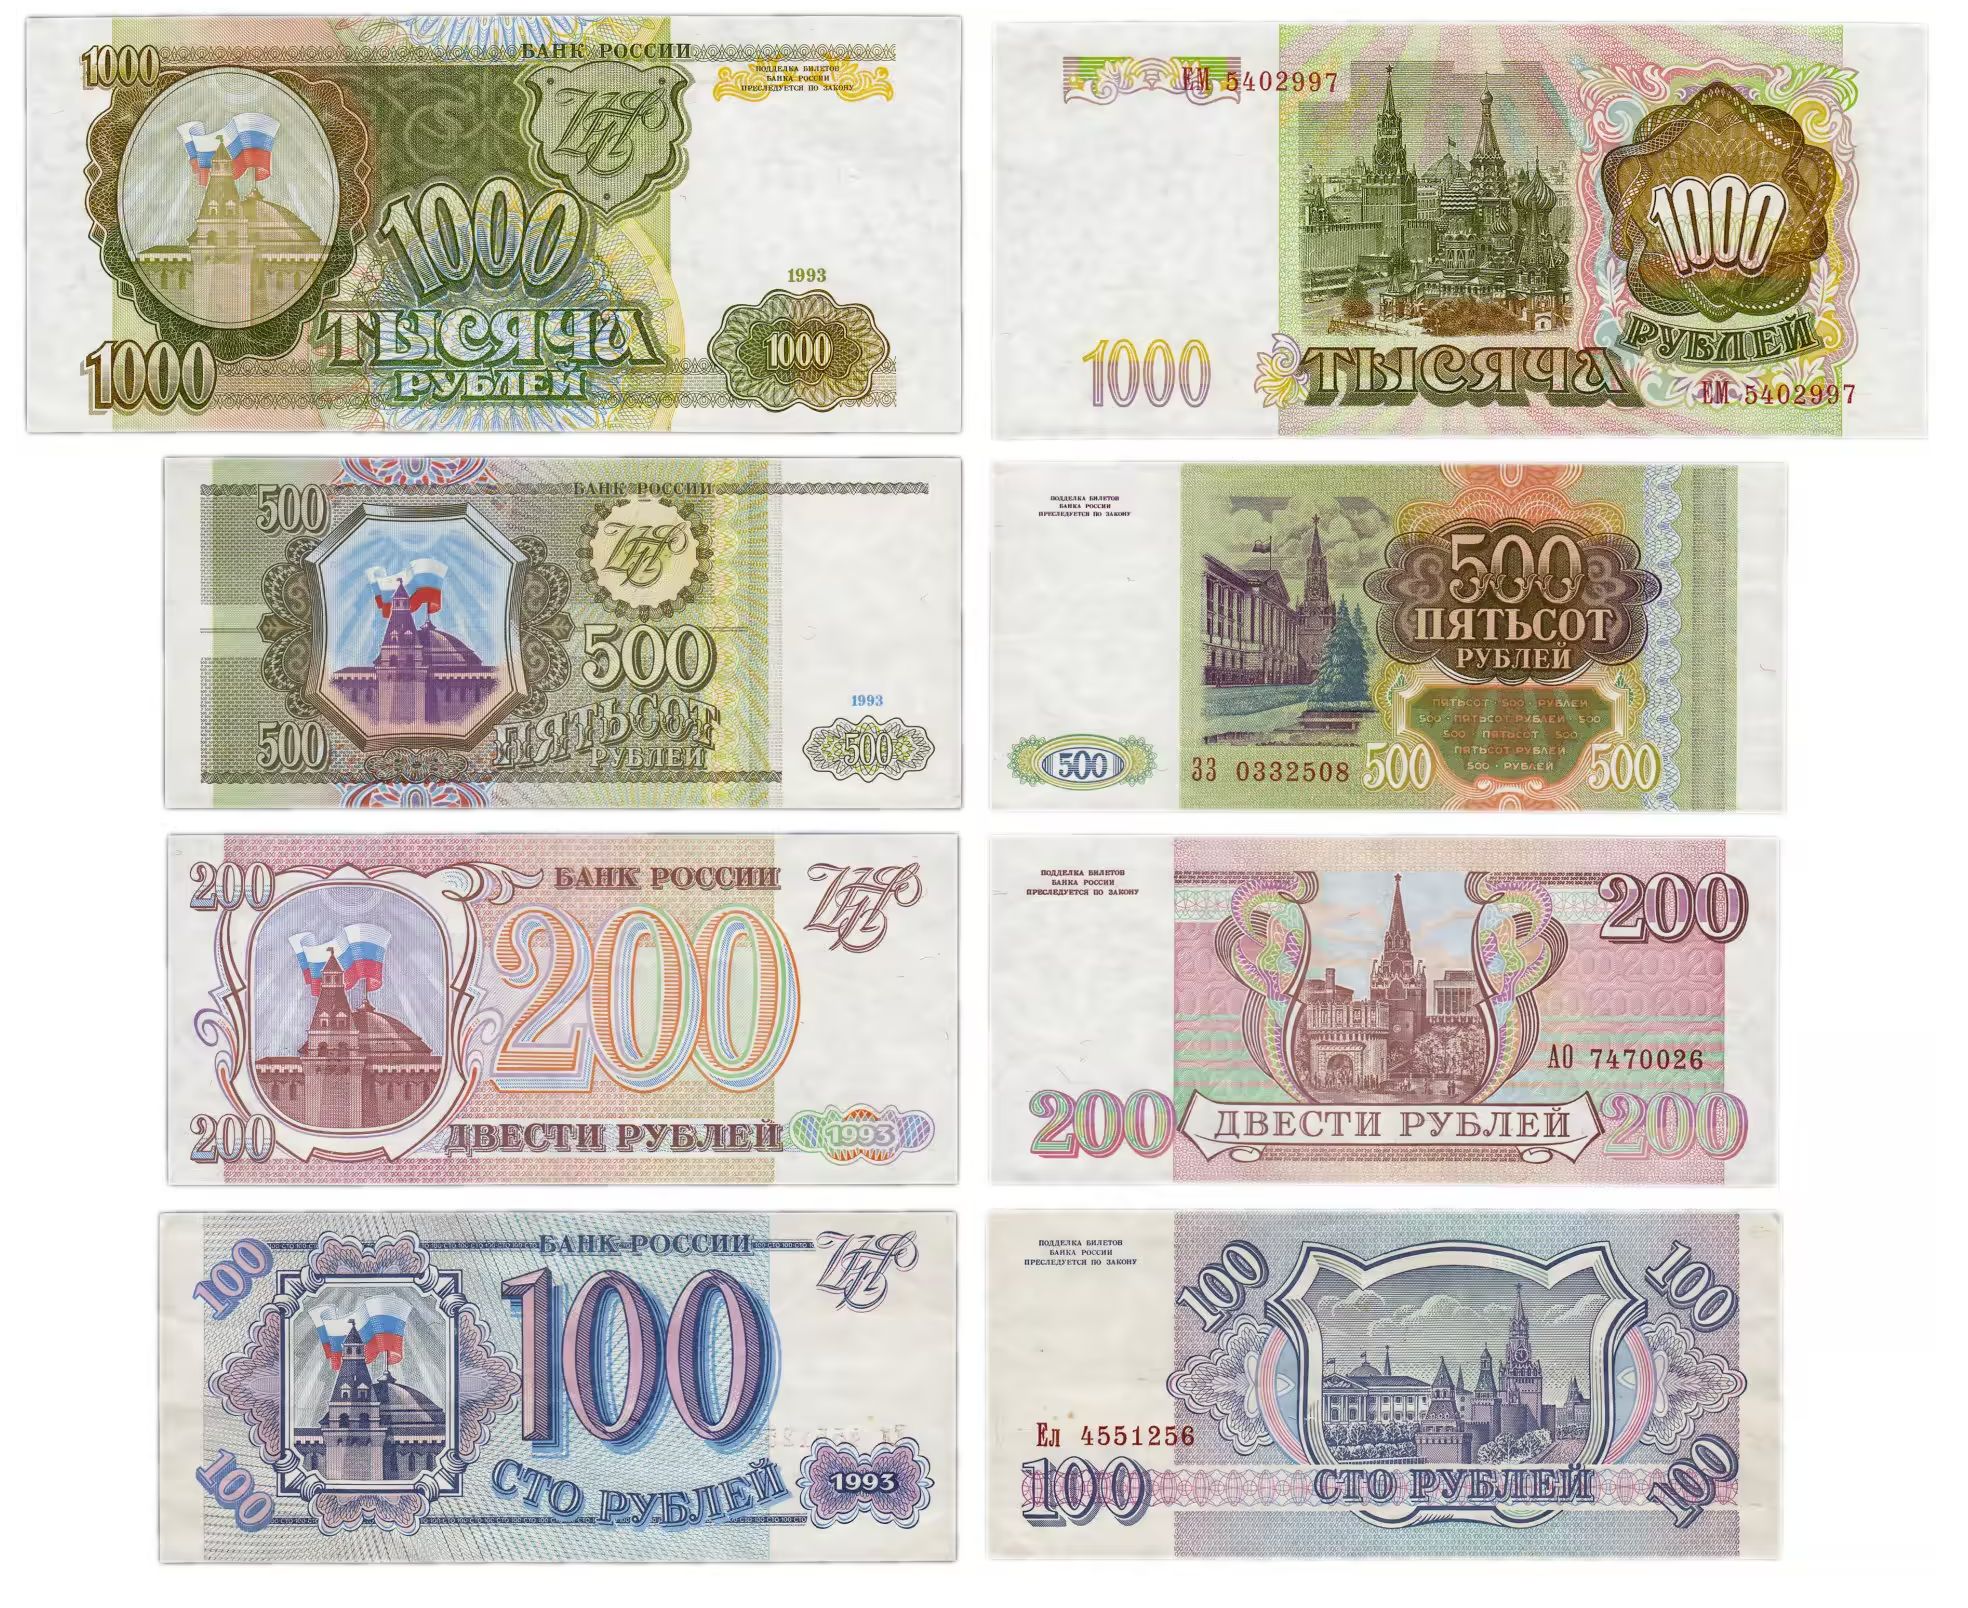 Купить 100 и 200 рублей. 100 Рублей 1993 года. Купюры 100, 200, 500 рублей 1993 года. Банкноты 100 рублей 1993. СТО рублей купюра 1993.